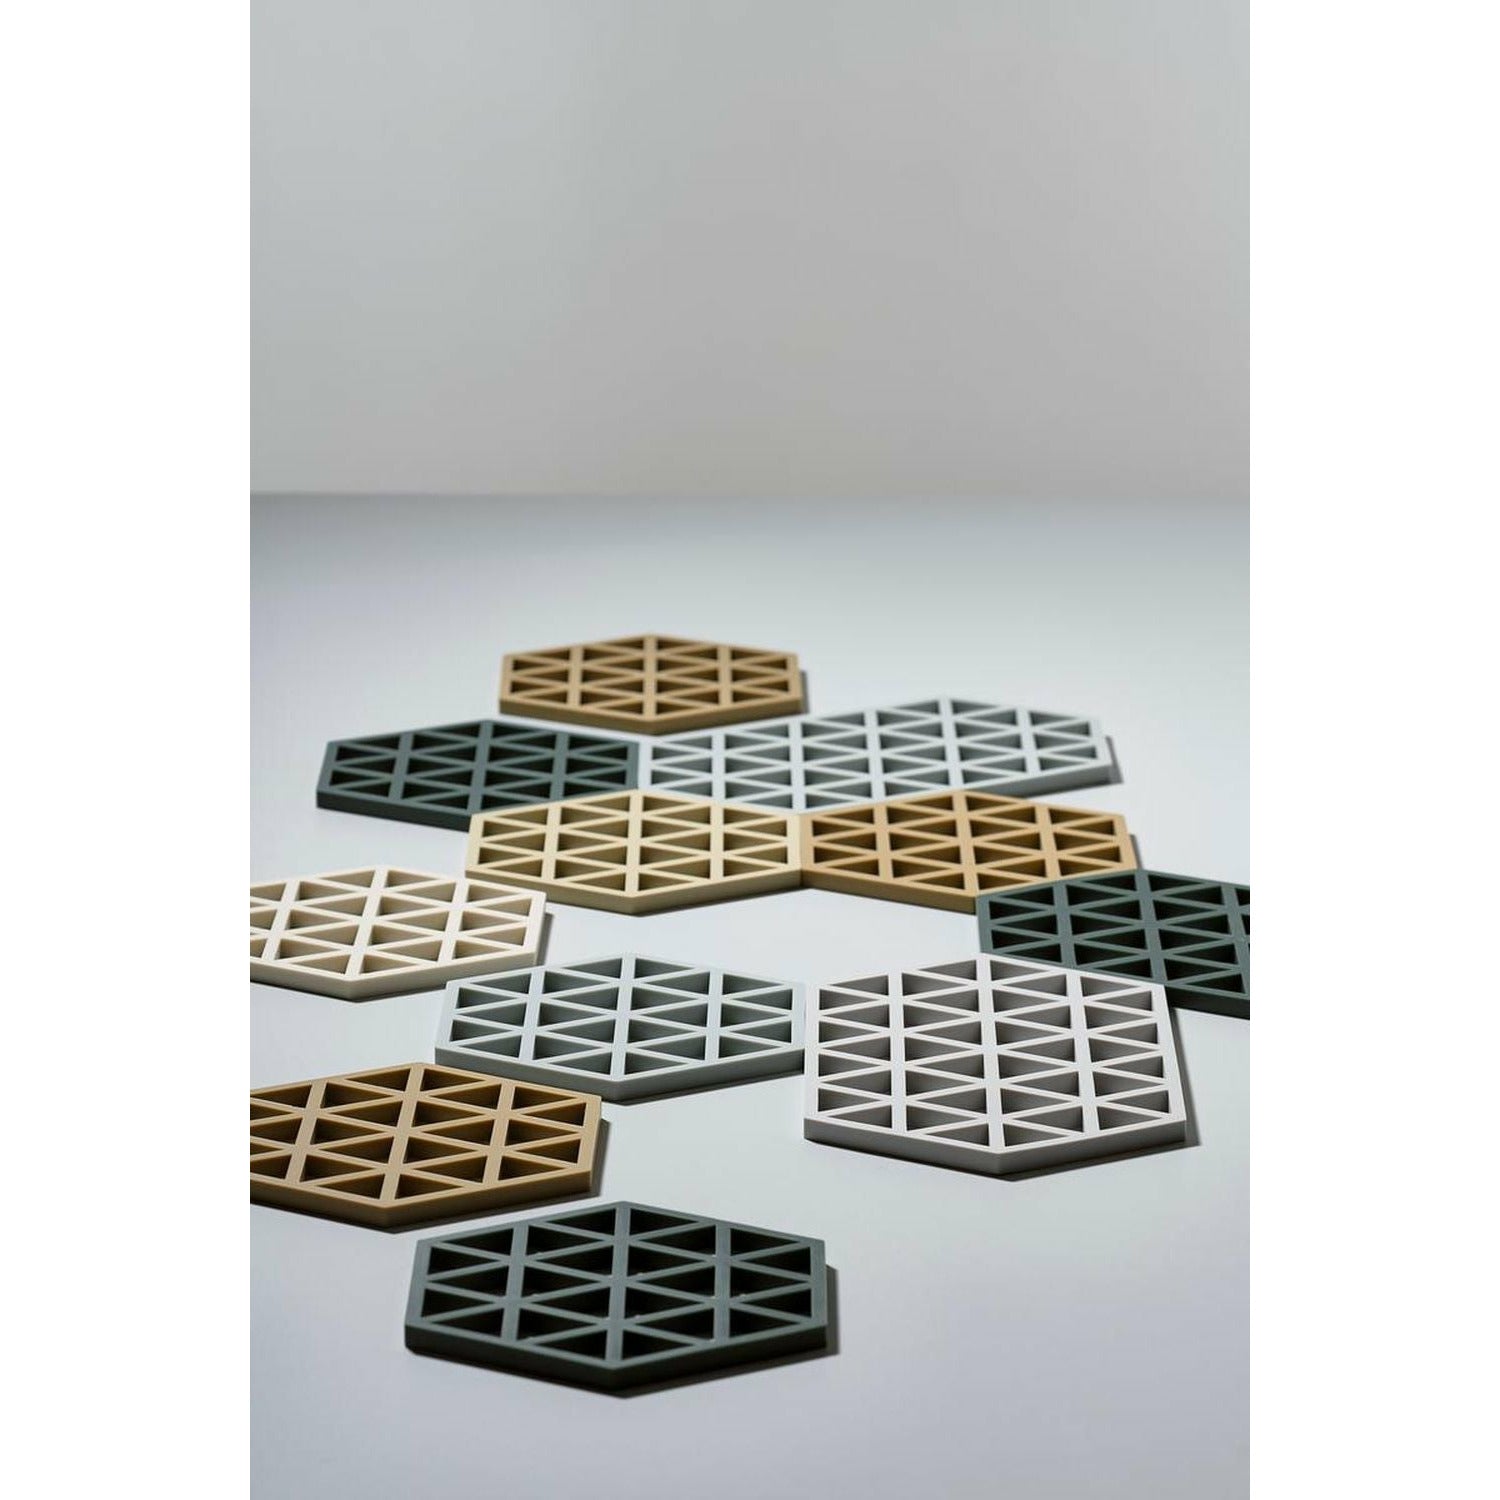 Zone Dänemark -Dreiecks Coaster 24 x14 cm, cool grau